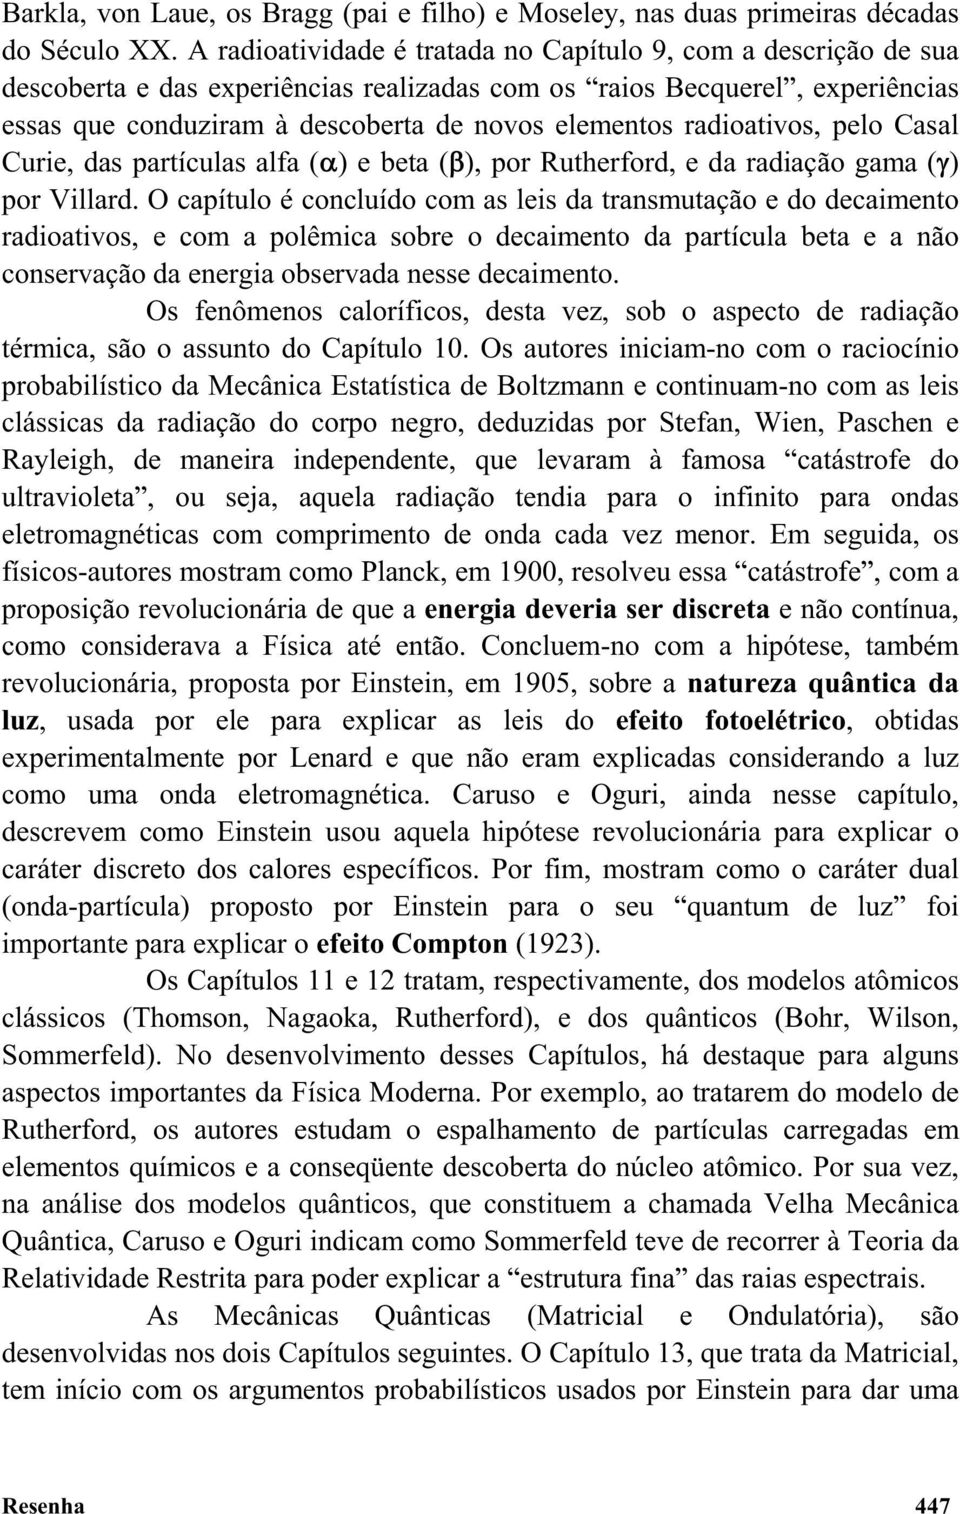 radioativos, pelo Casal Curie, das partículas alfa ( ) ebeta( ), por Rutherford, e da radiação gama ( ) por Villard.